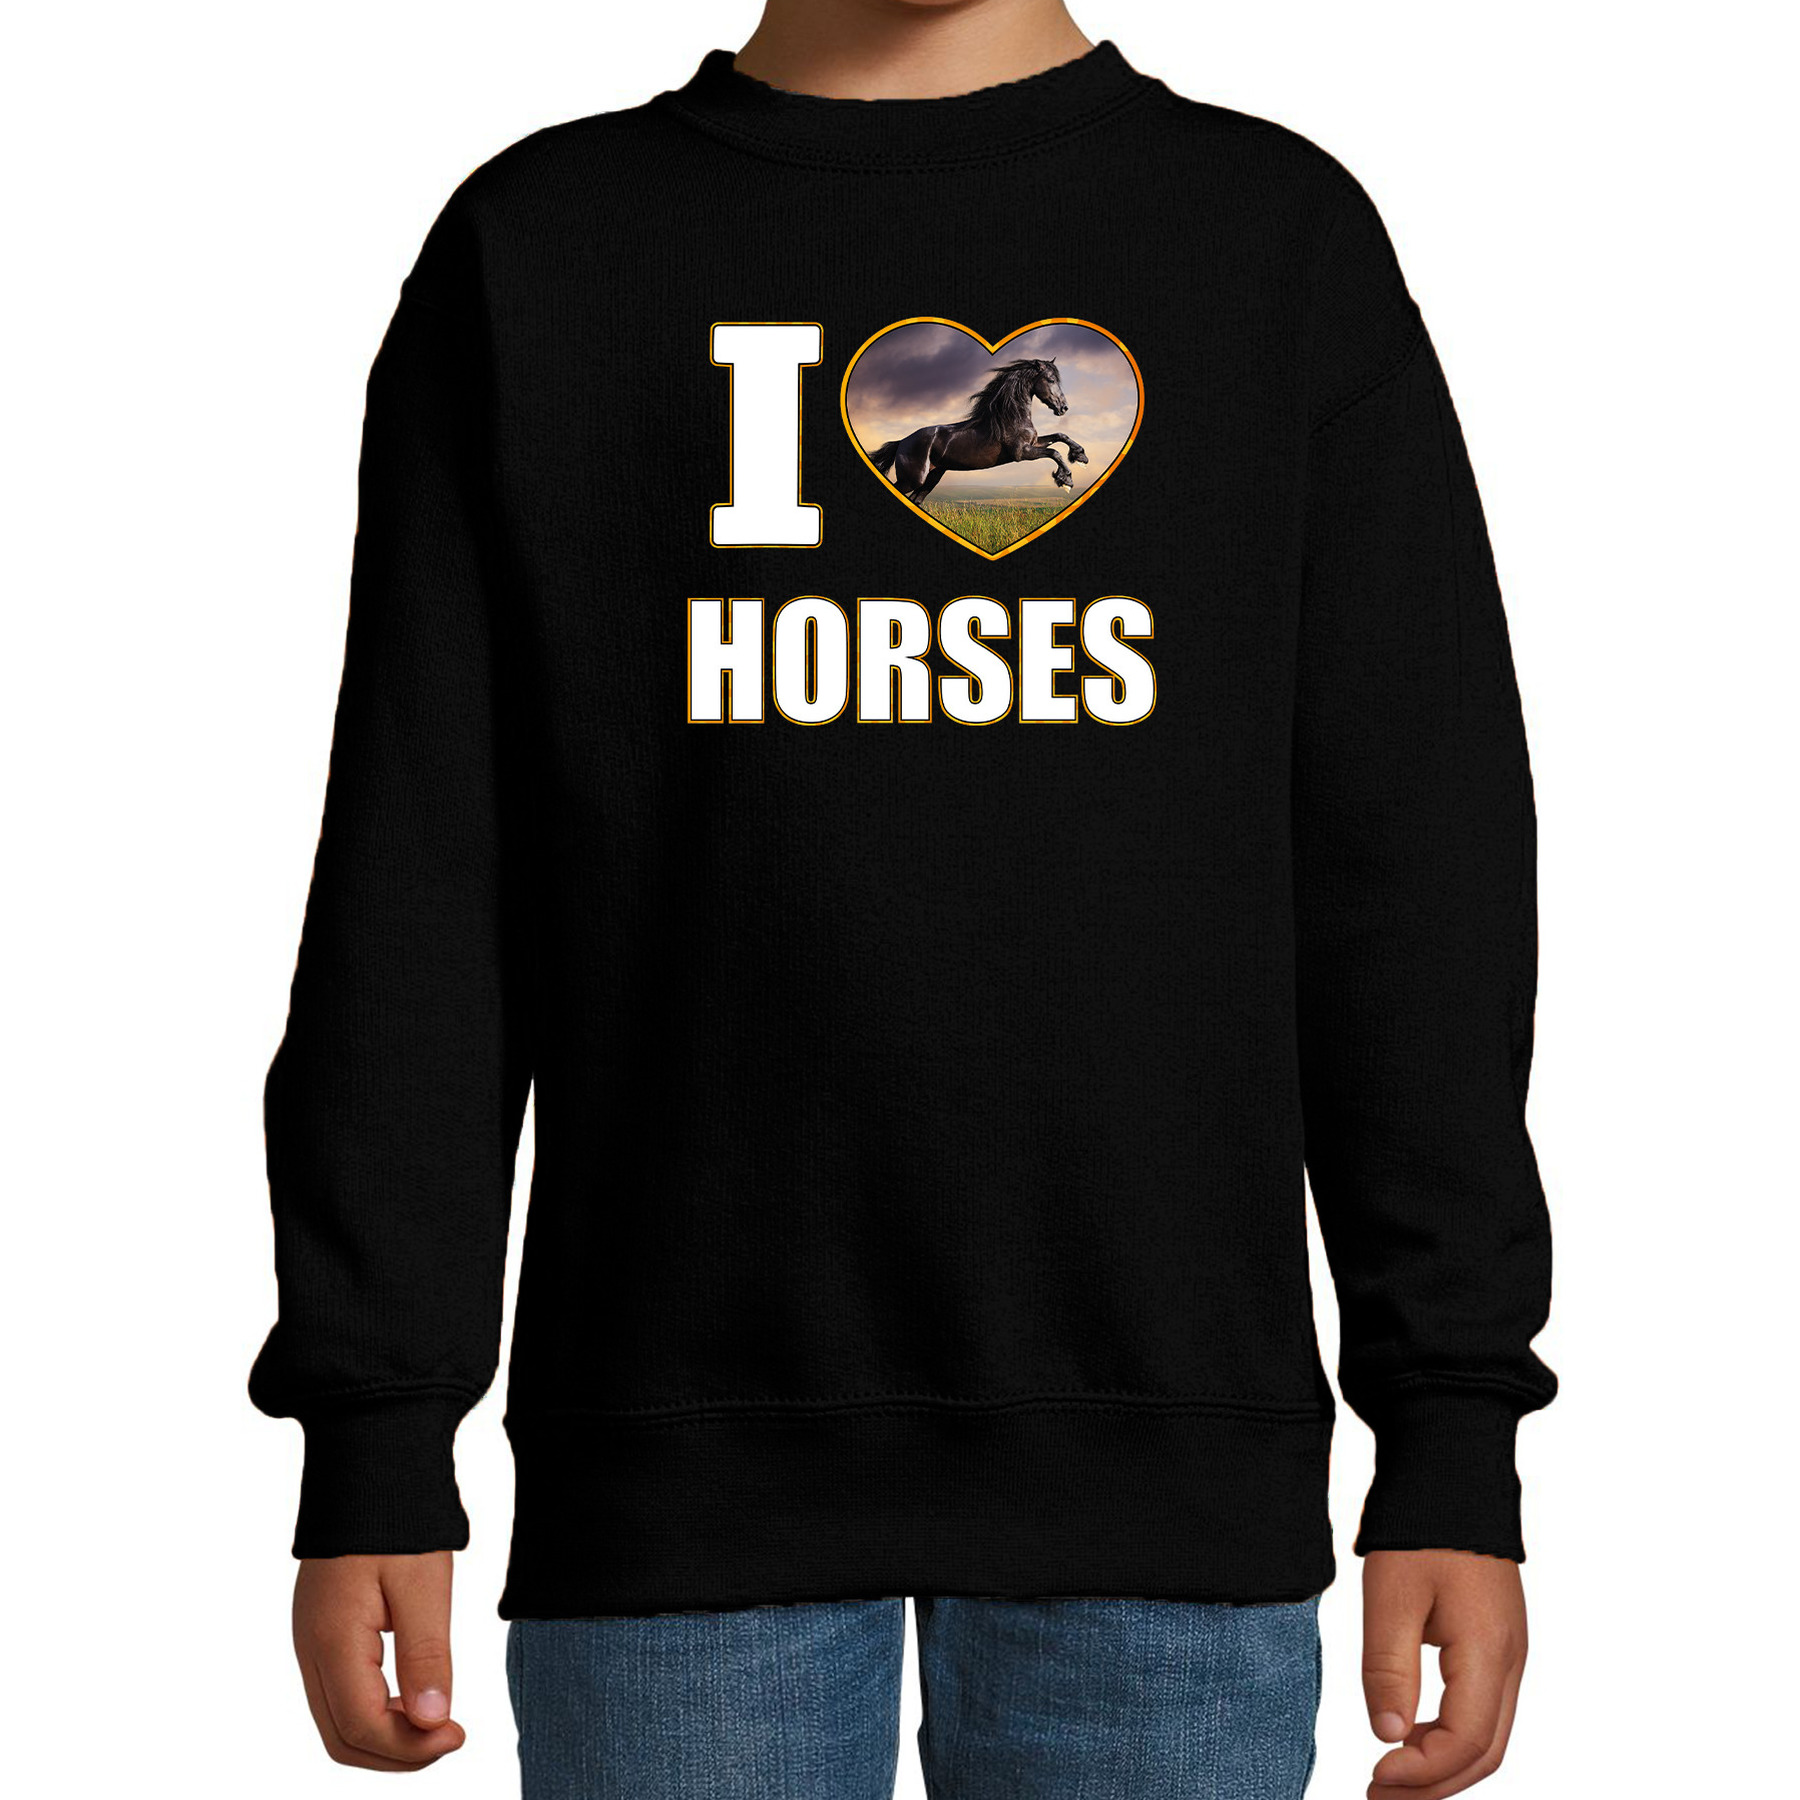 I love horses sweater - trui met dieren foto van een zwart paard zwart voor kinderen